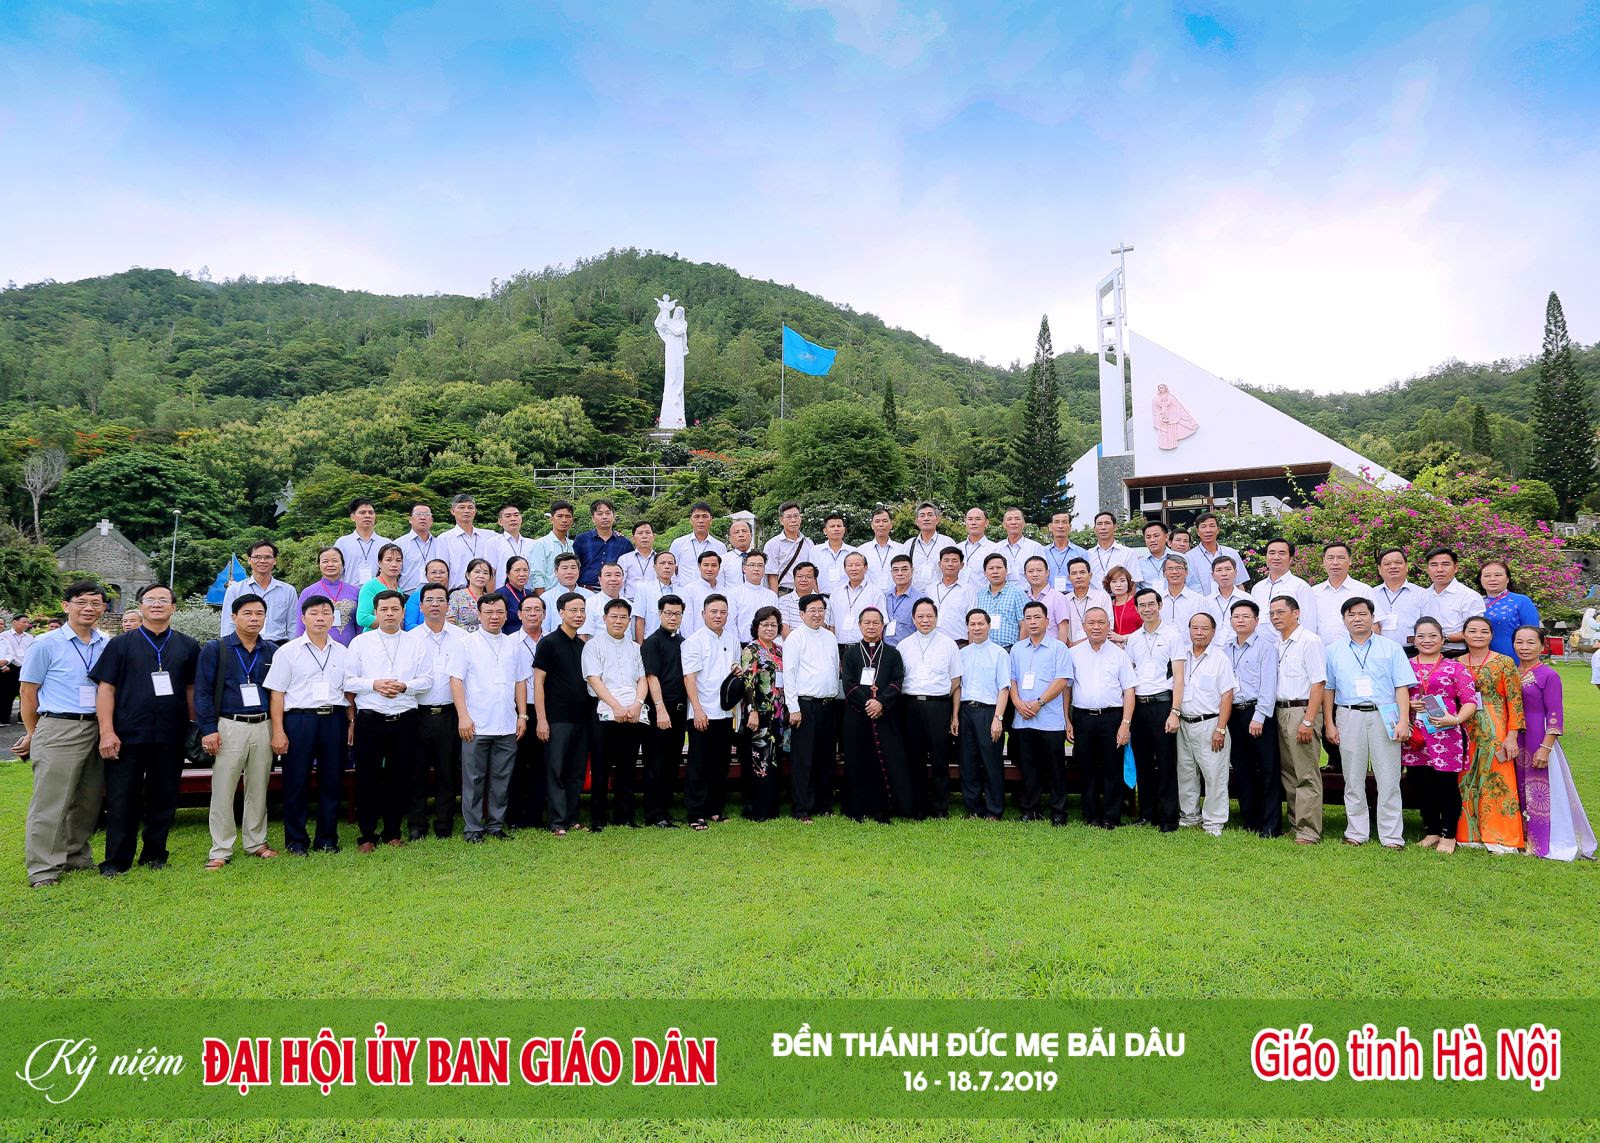 Tường thuật Đại hội Ủy Ban Giáo Dân của HĐGMVN lần thứ 1 tại Bãi Dâu, Vũng Tàu